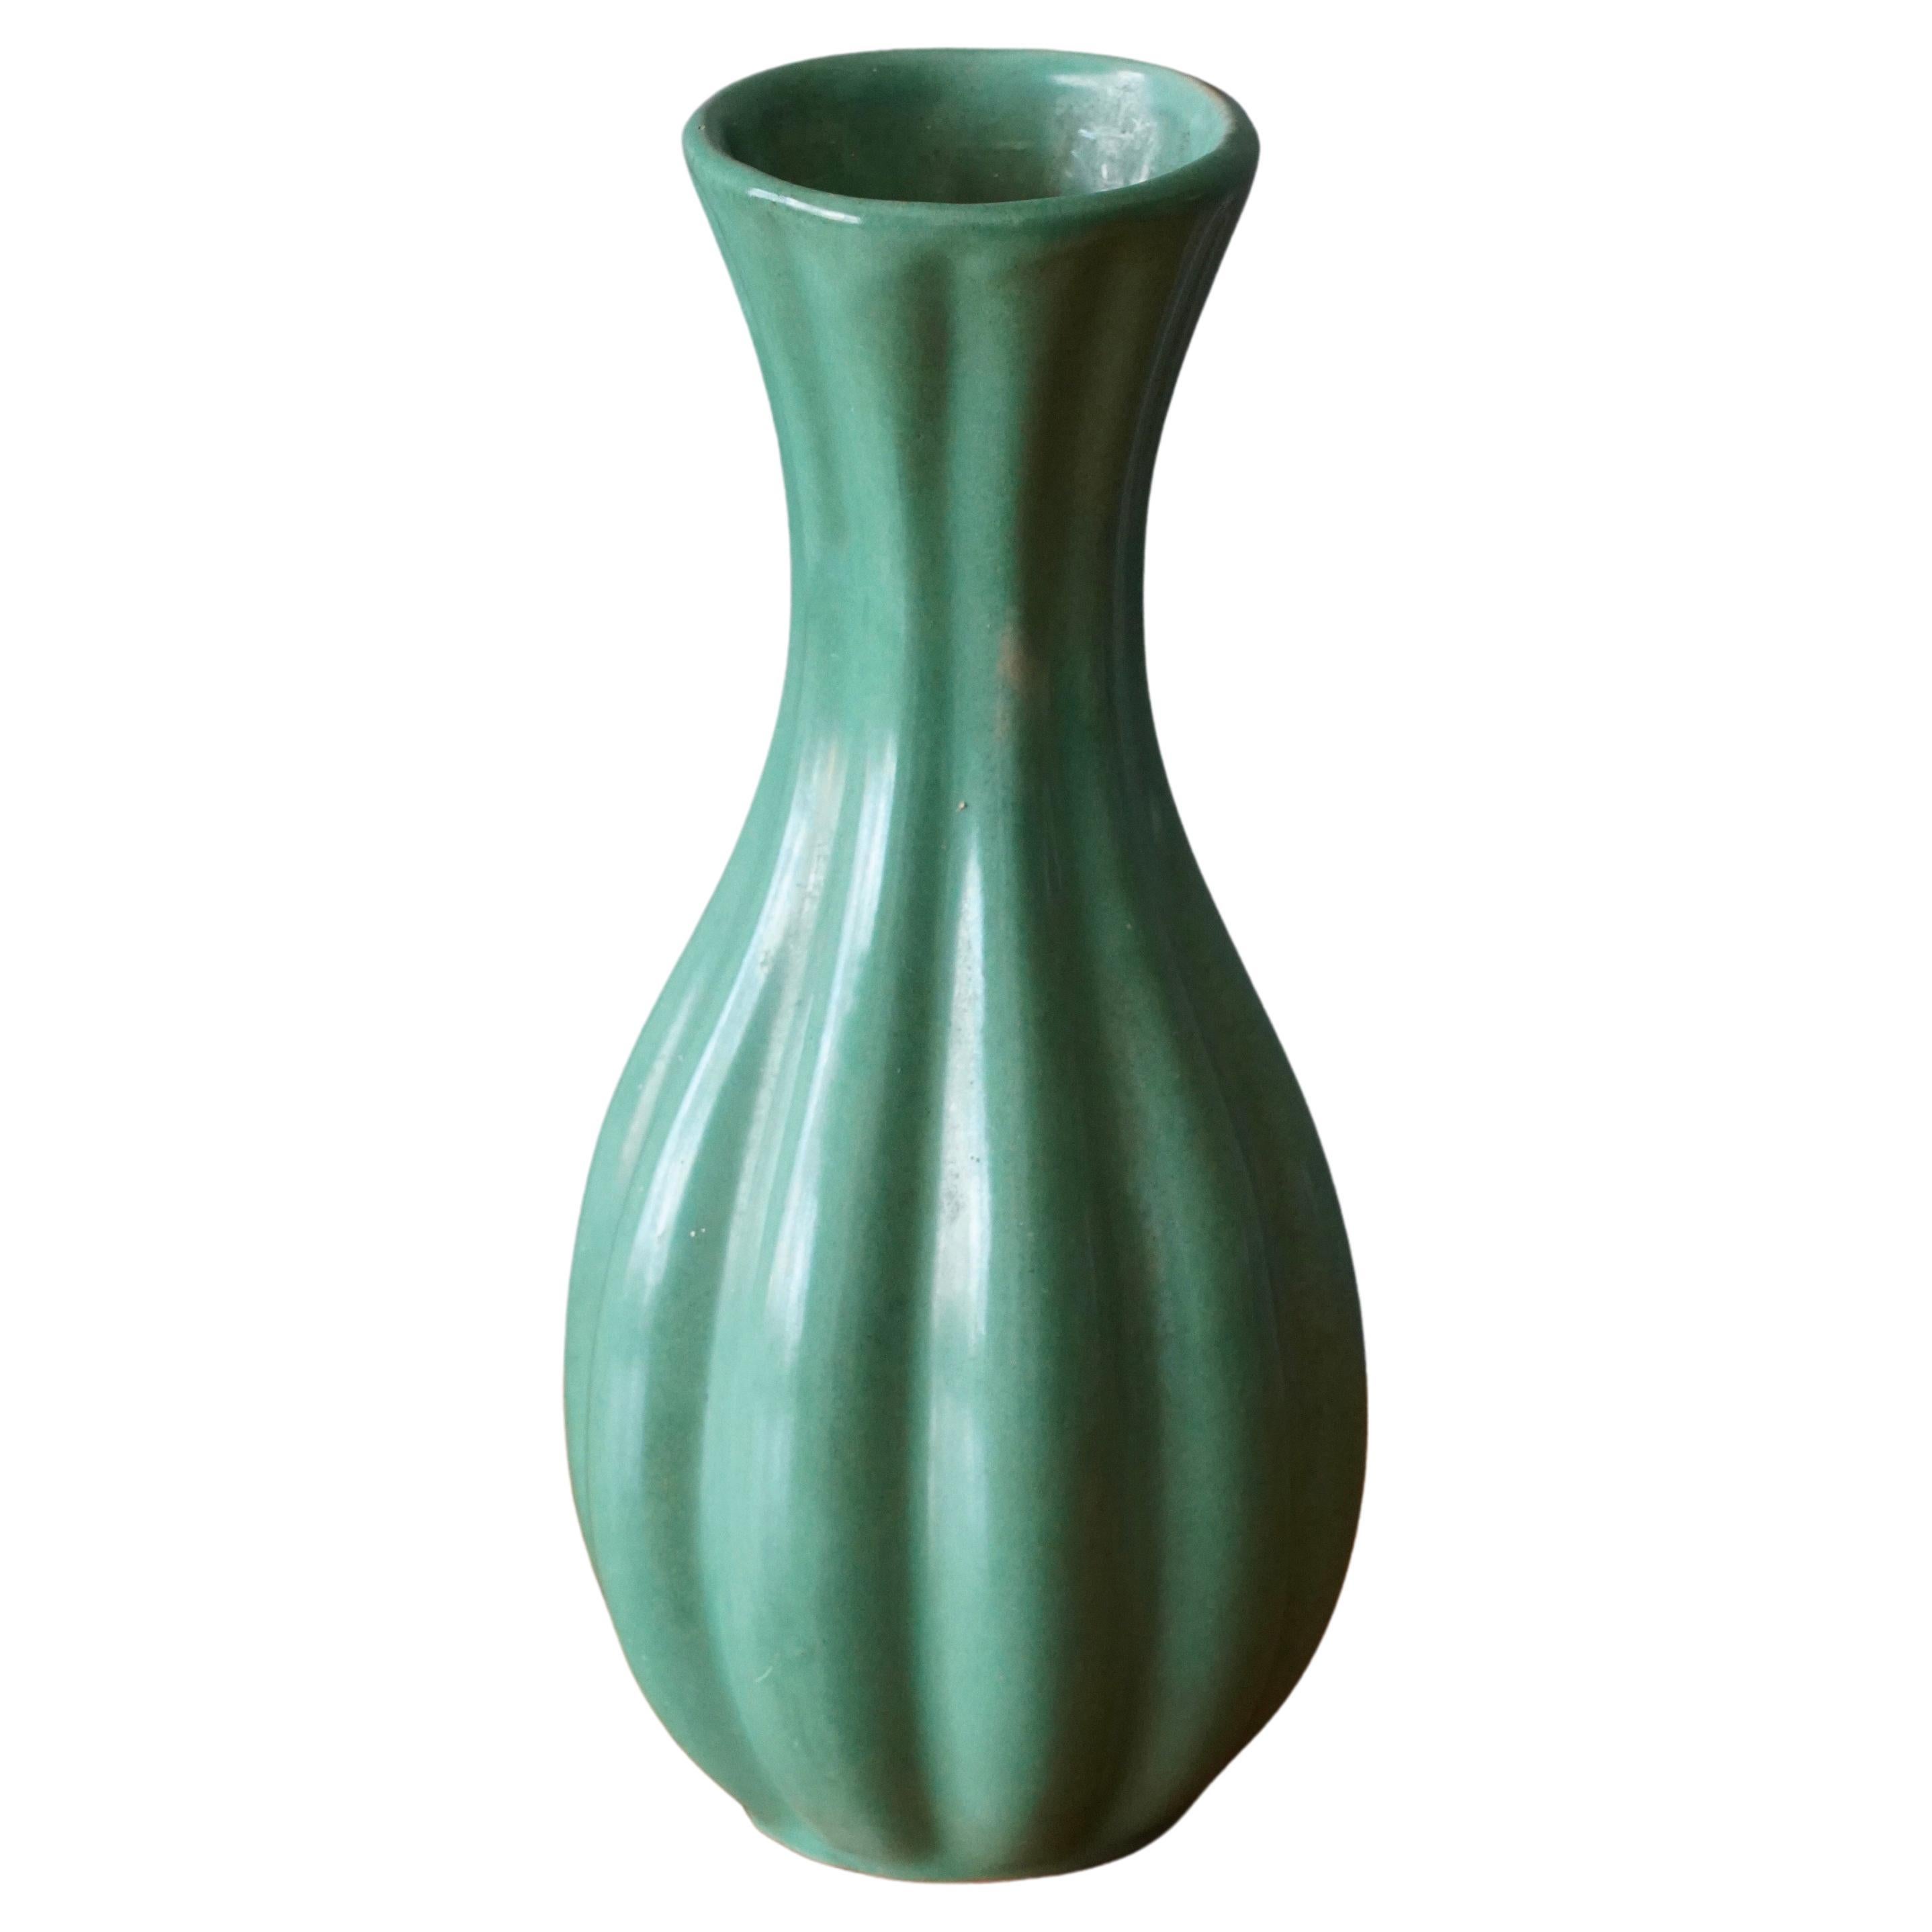 Upsala-Ekeby, Fluted Vase, Green Glazed Earthenware, Sweden, 1940s